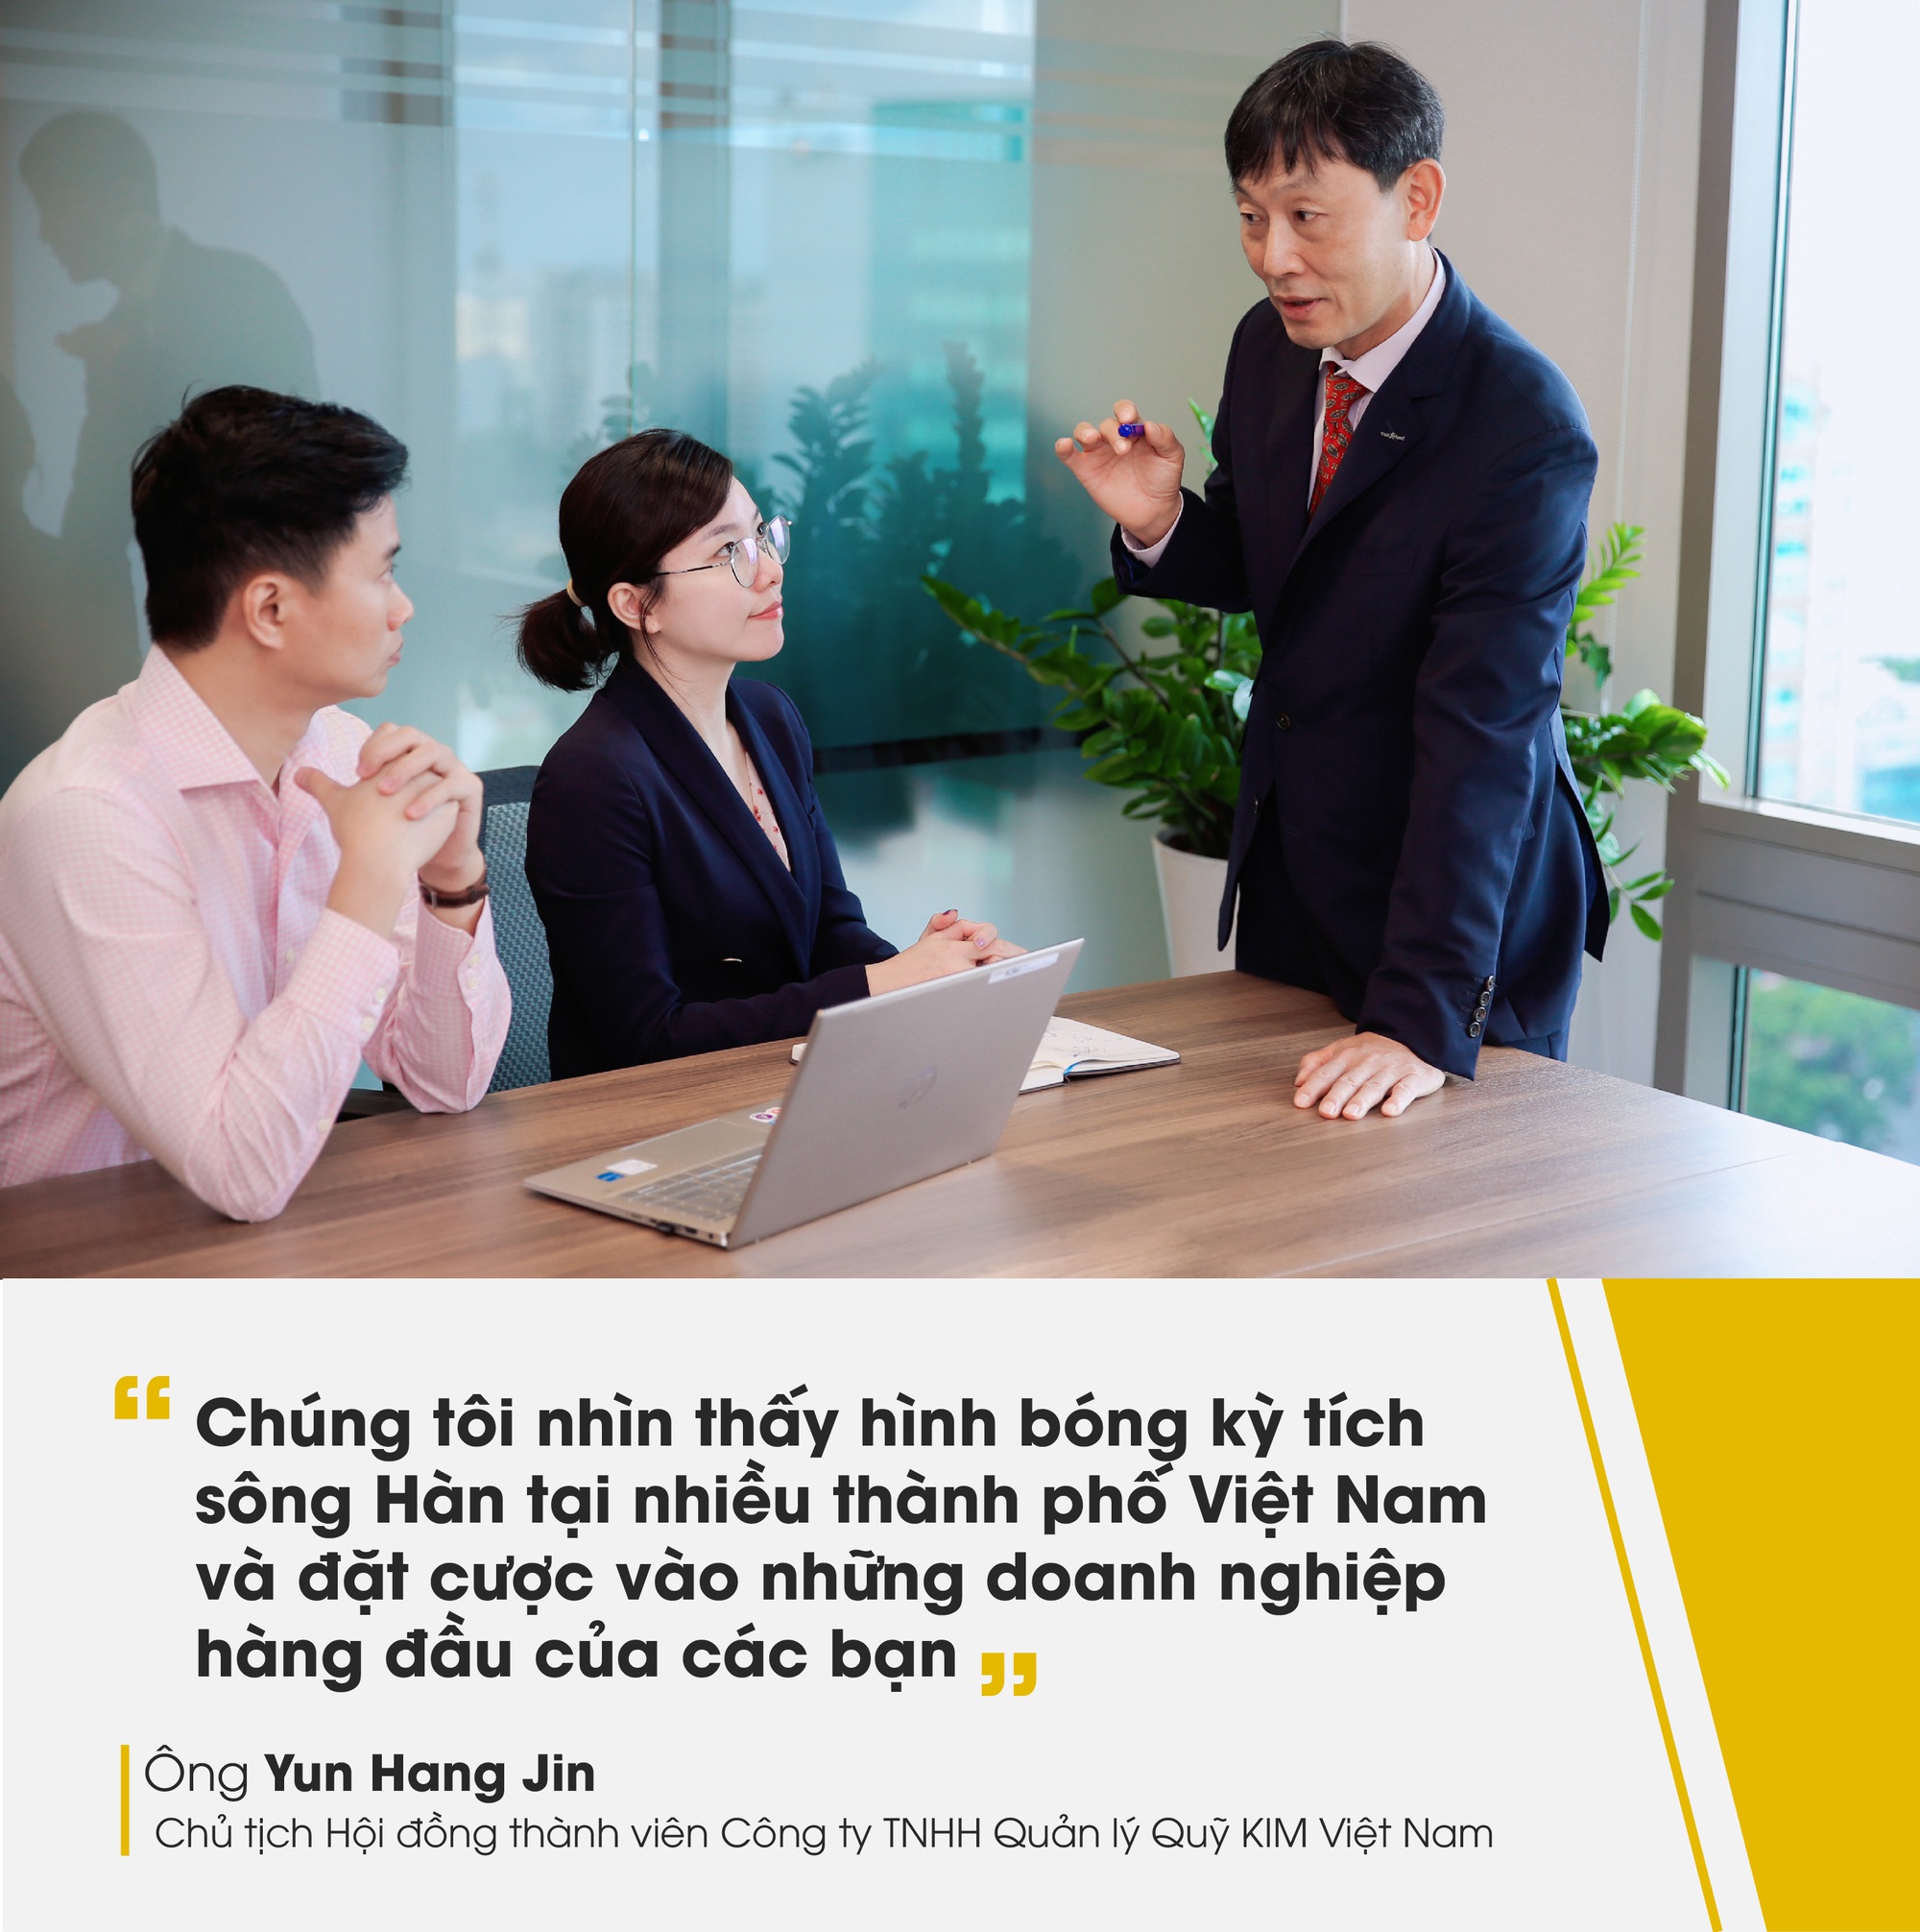 Chủ tịch KIM Việt Nam: Chúng tôi nhìn thấy hình bóng kỳ tích sông Hàn và đặt cược vào những doanh nghiệp hàng đầu của Việt Nam - Ảnh 4.